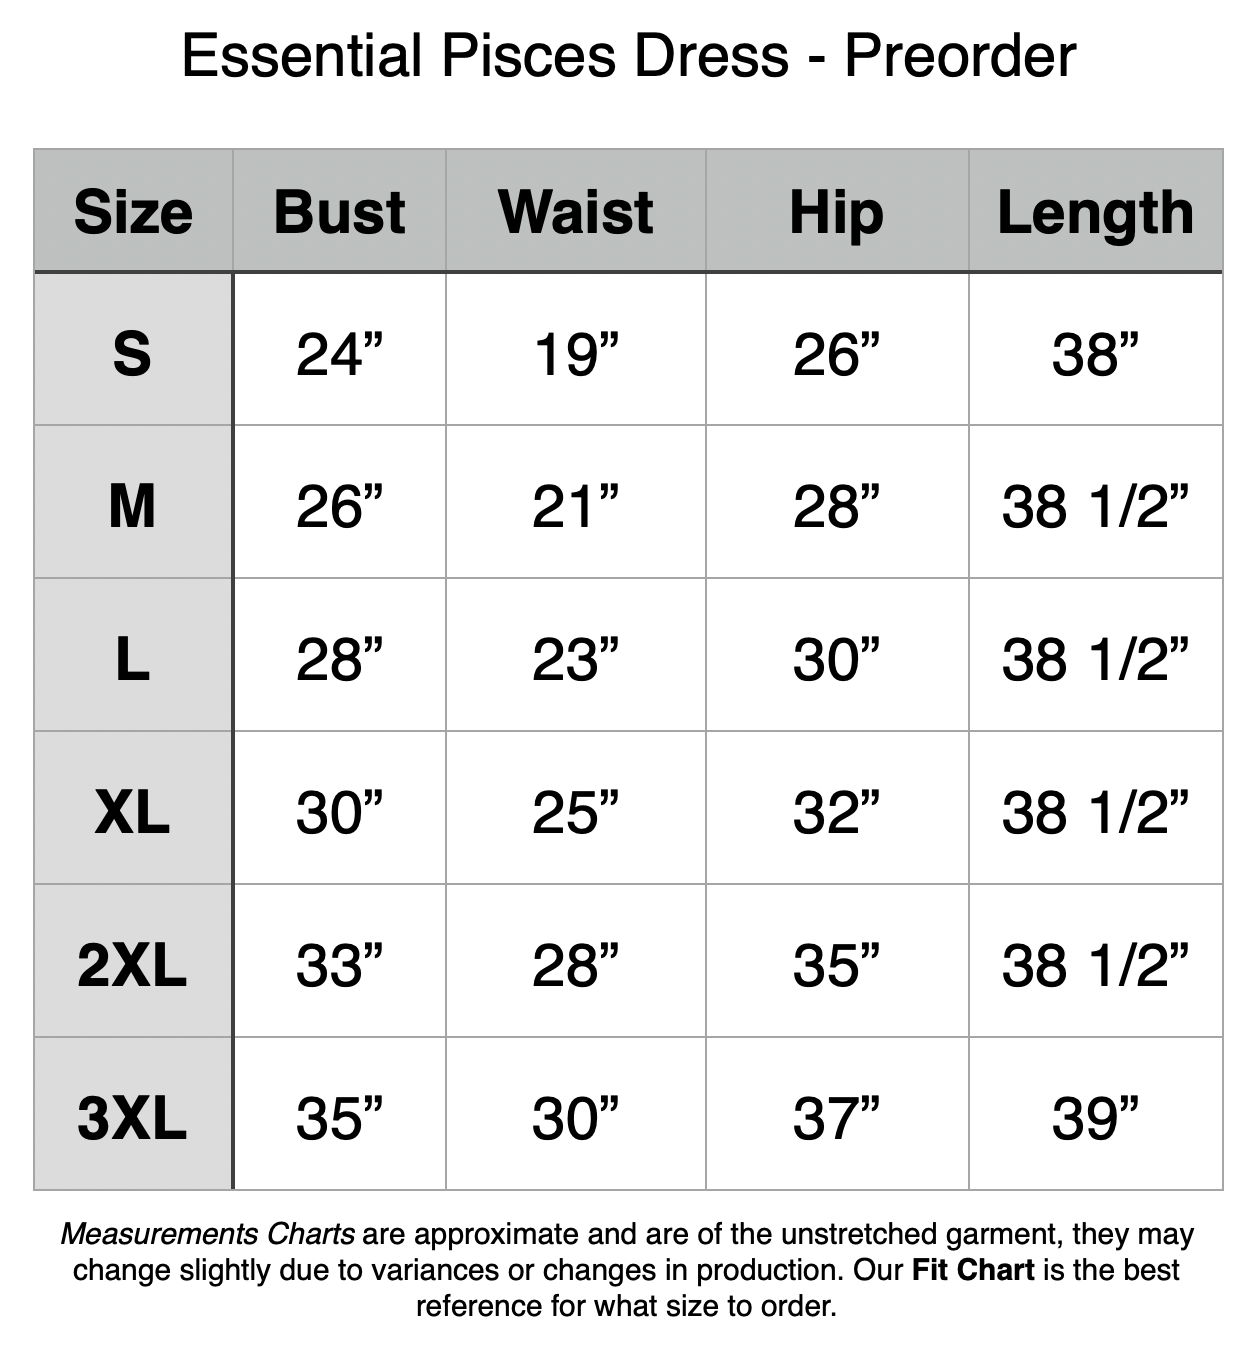 Essential Pisces Dress - Preorder: S - 24 Bust, 19” Waist, 26” Hip, 38” Length. M - 26” Bust, 21” Waist, 28” Hip, 38.5” Length. L - 28” Bust, 23” Waist, 30” Hip, 38.5” Length. XL - 30” Bust, 25” Waist, 32” Hip, 38.5” Length. 2XL - 33” Bust, 28” Waist, 35” Hip, 38.5” Length. 3XL - 35” Bust, 30” Waist, 37” Hip, 39” Length.